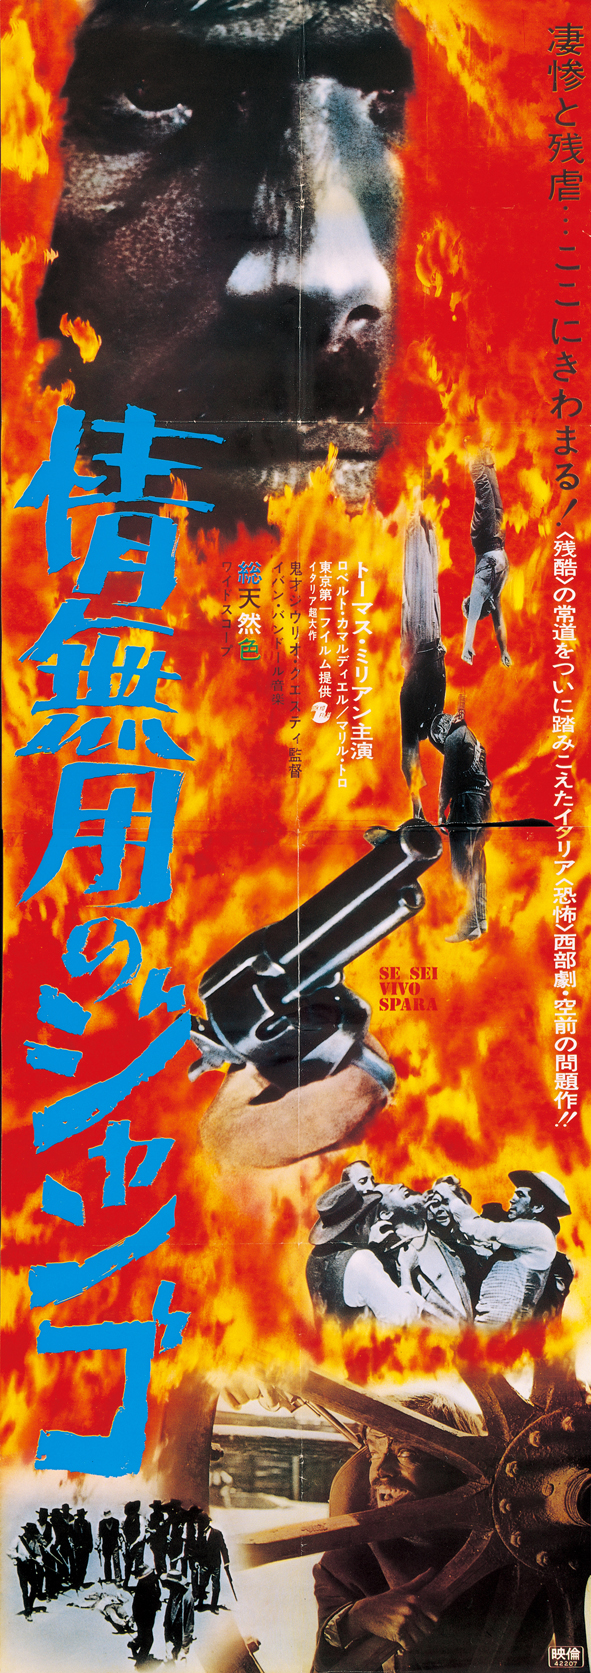 『情無用のジャンゴ』
（1966年、日本公開67年）　
監督：ジュリオ・クエスティ
主演：トーマス・ミリアン